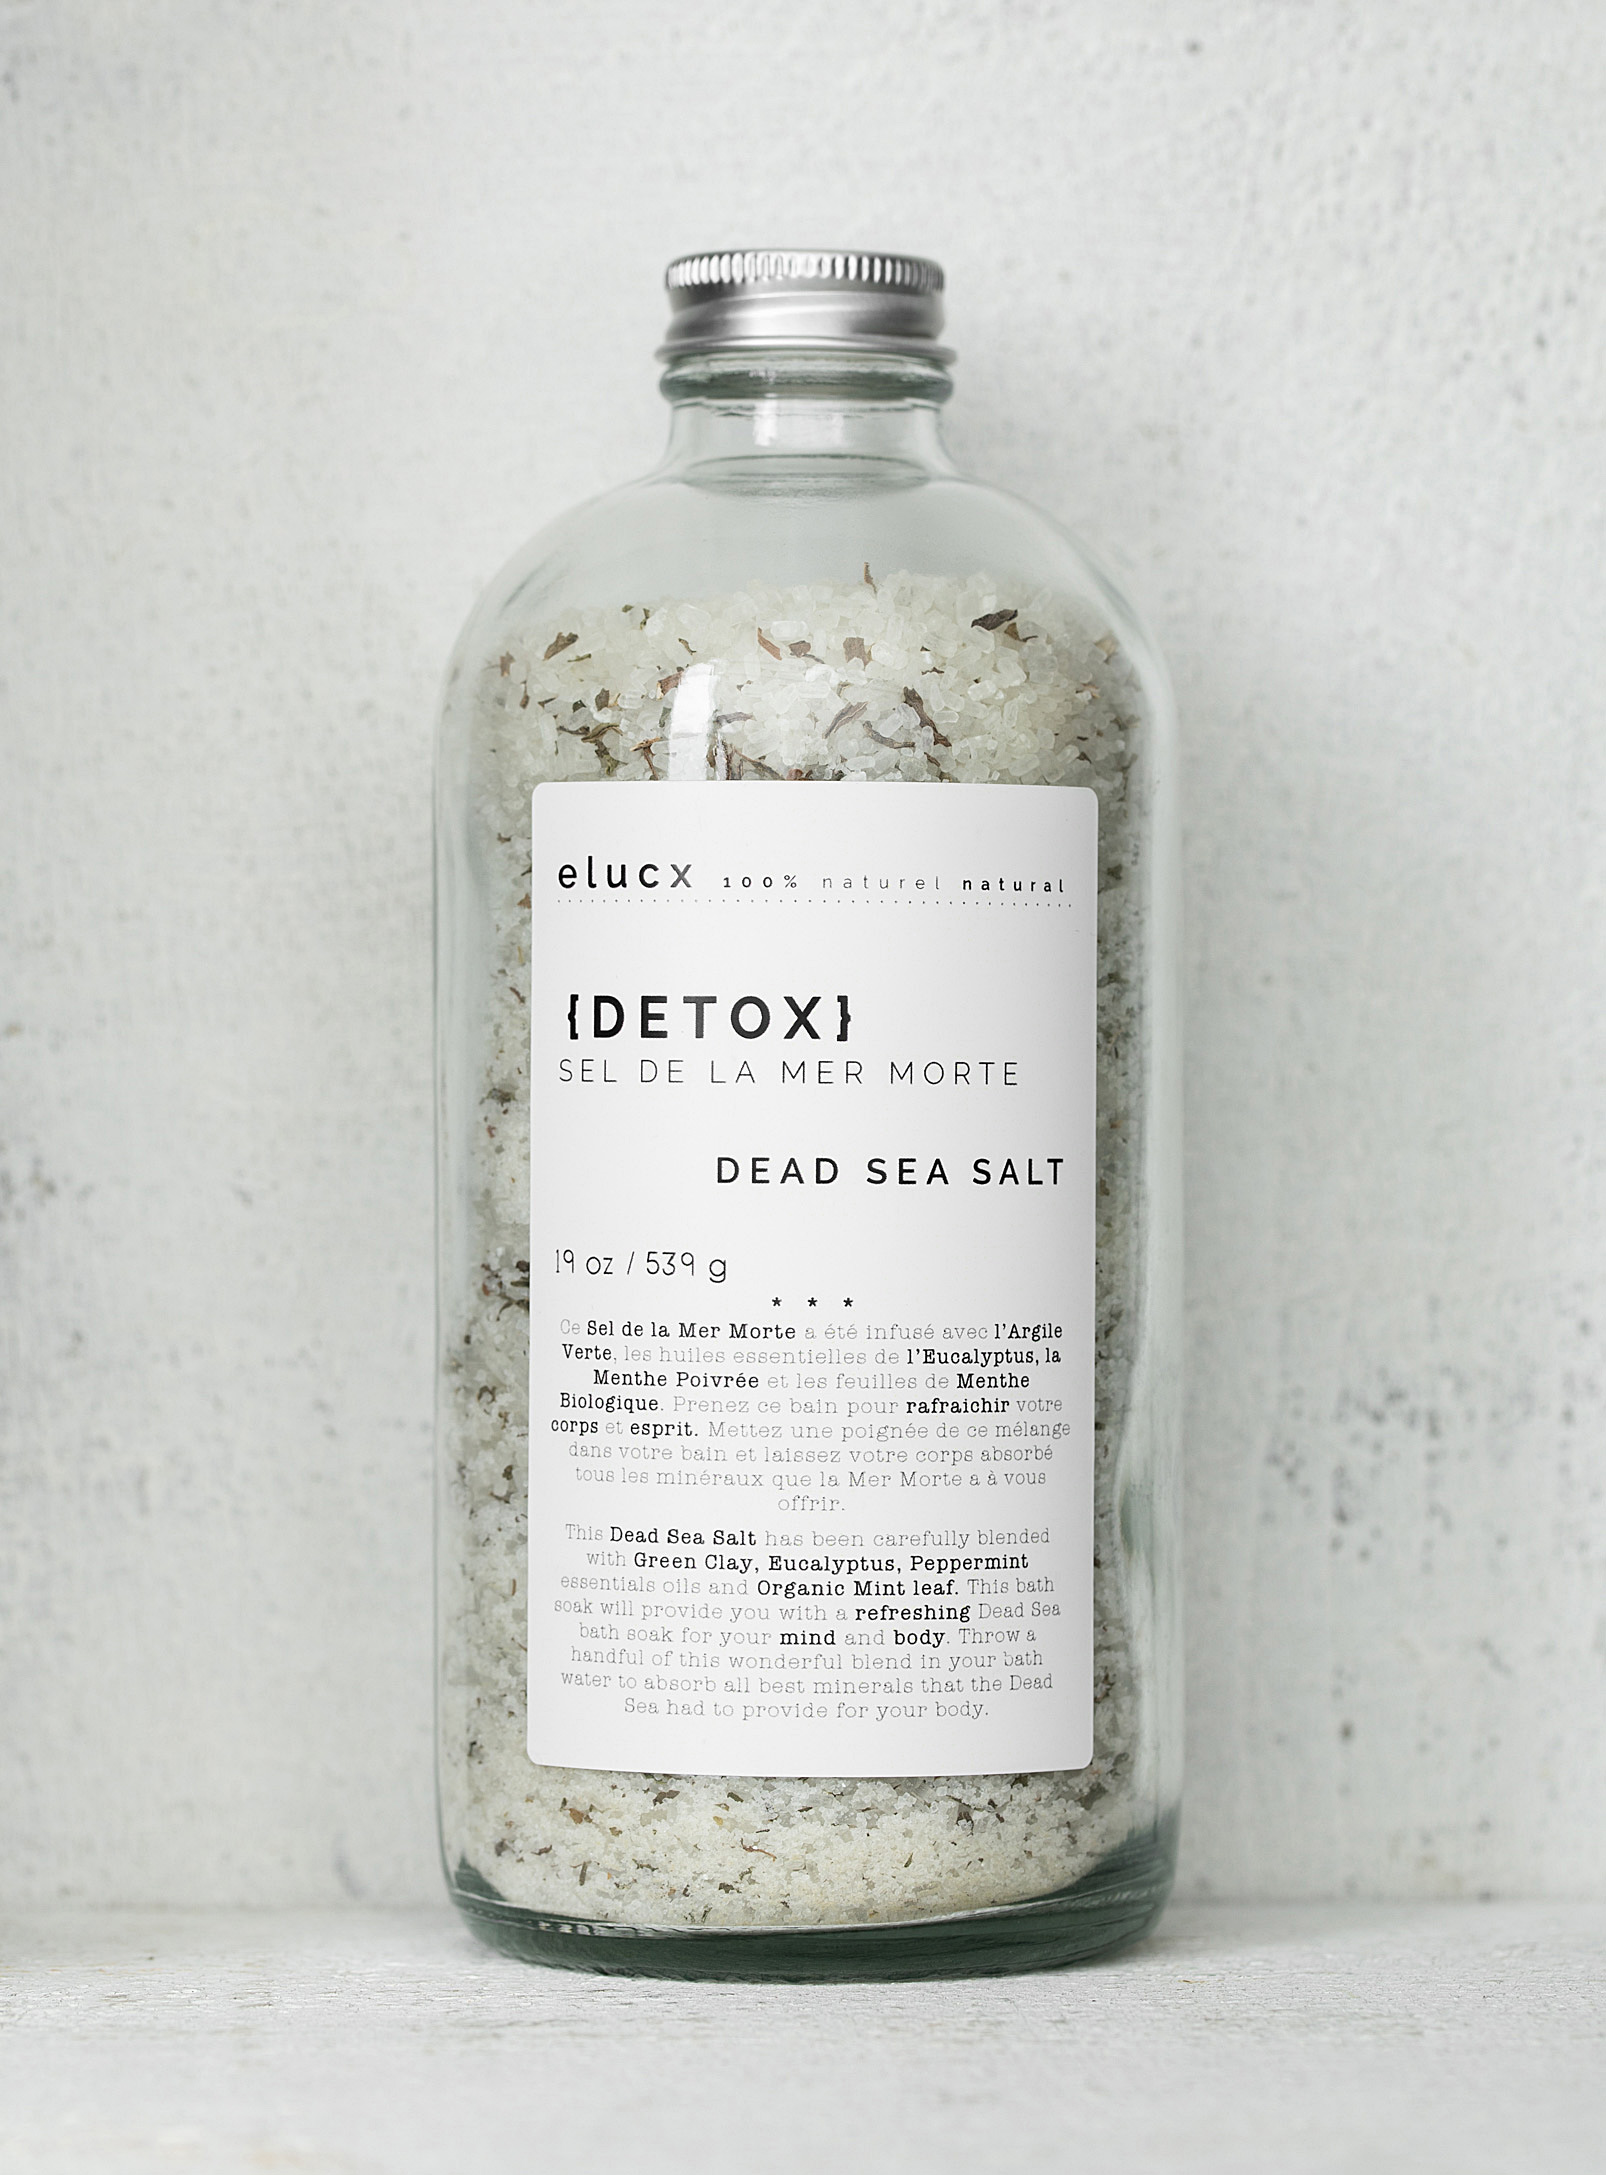 Elucx - Detox bath salt